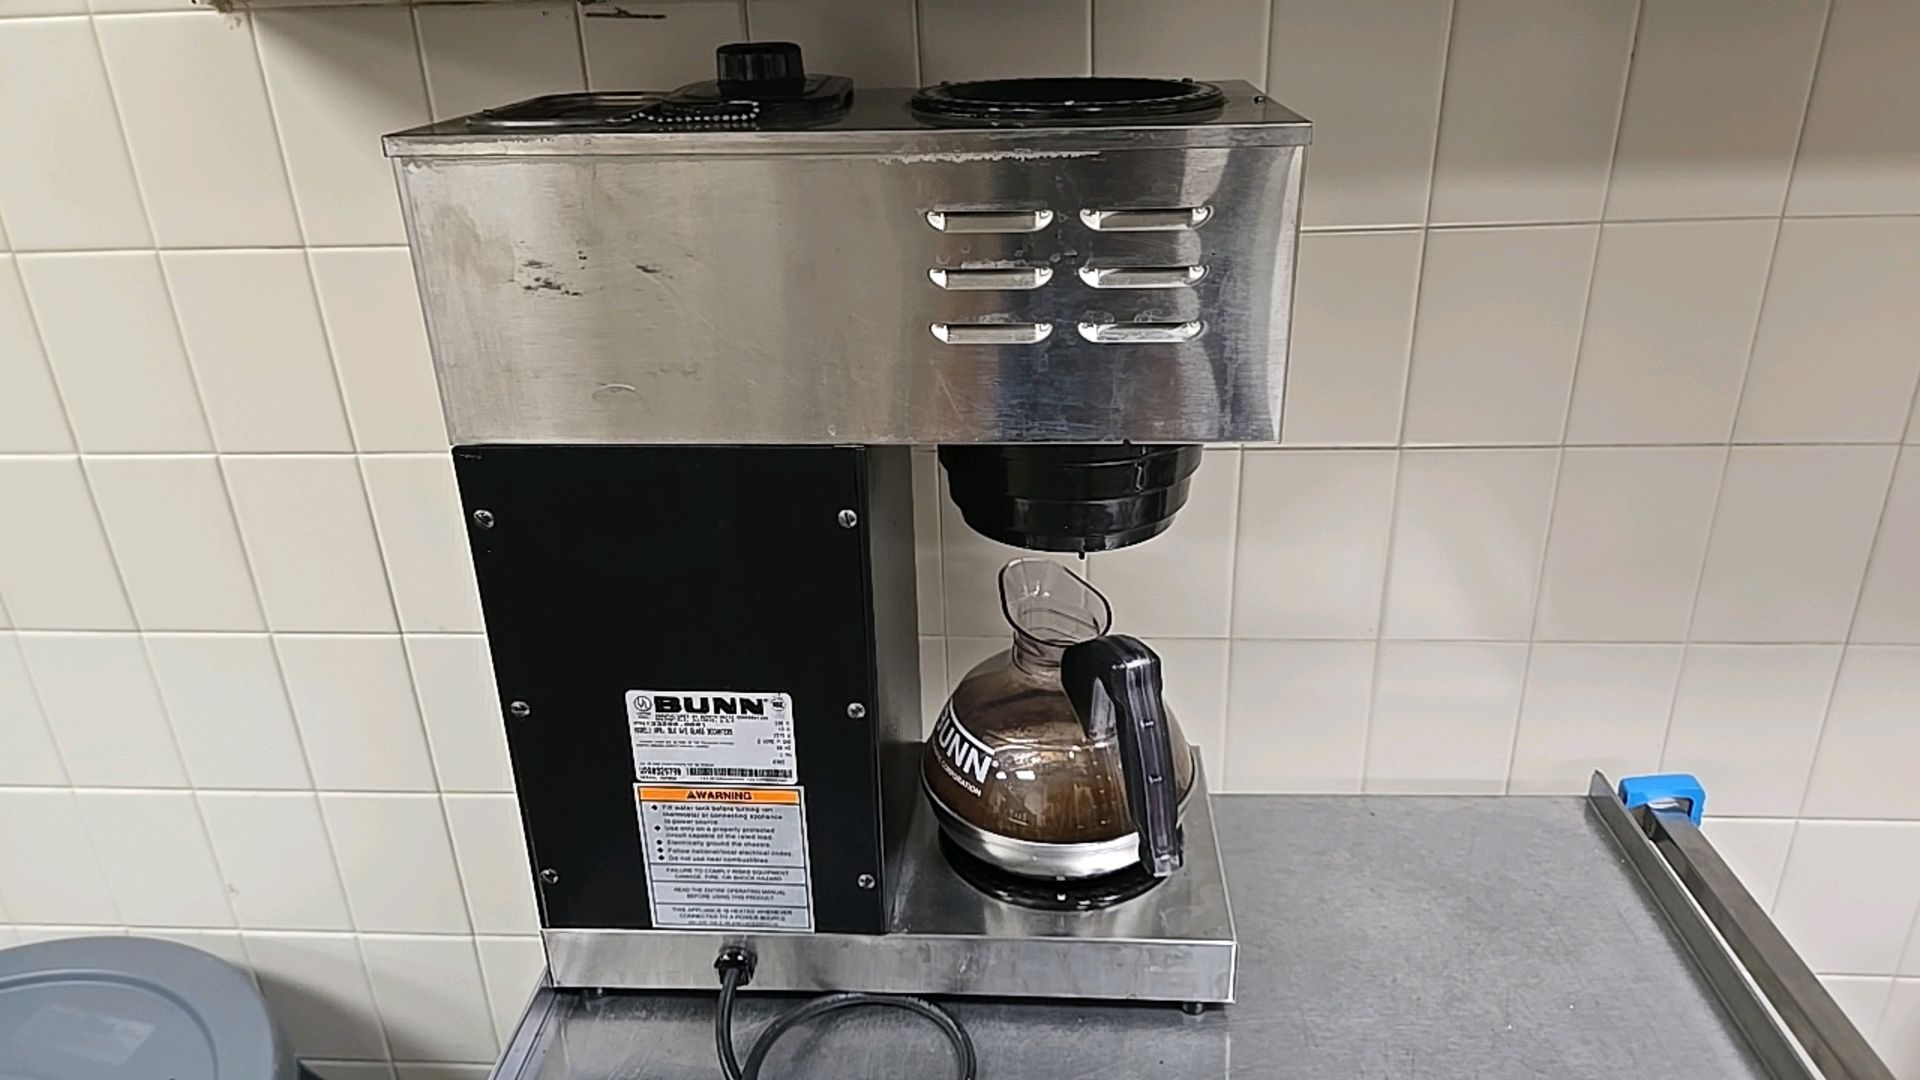 BUNN COFFEE MAKER - Image 2 of 3